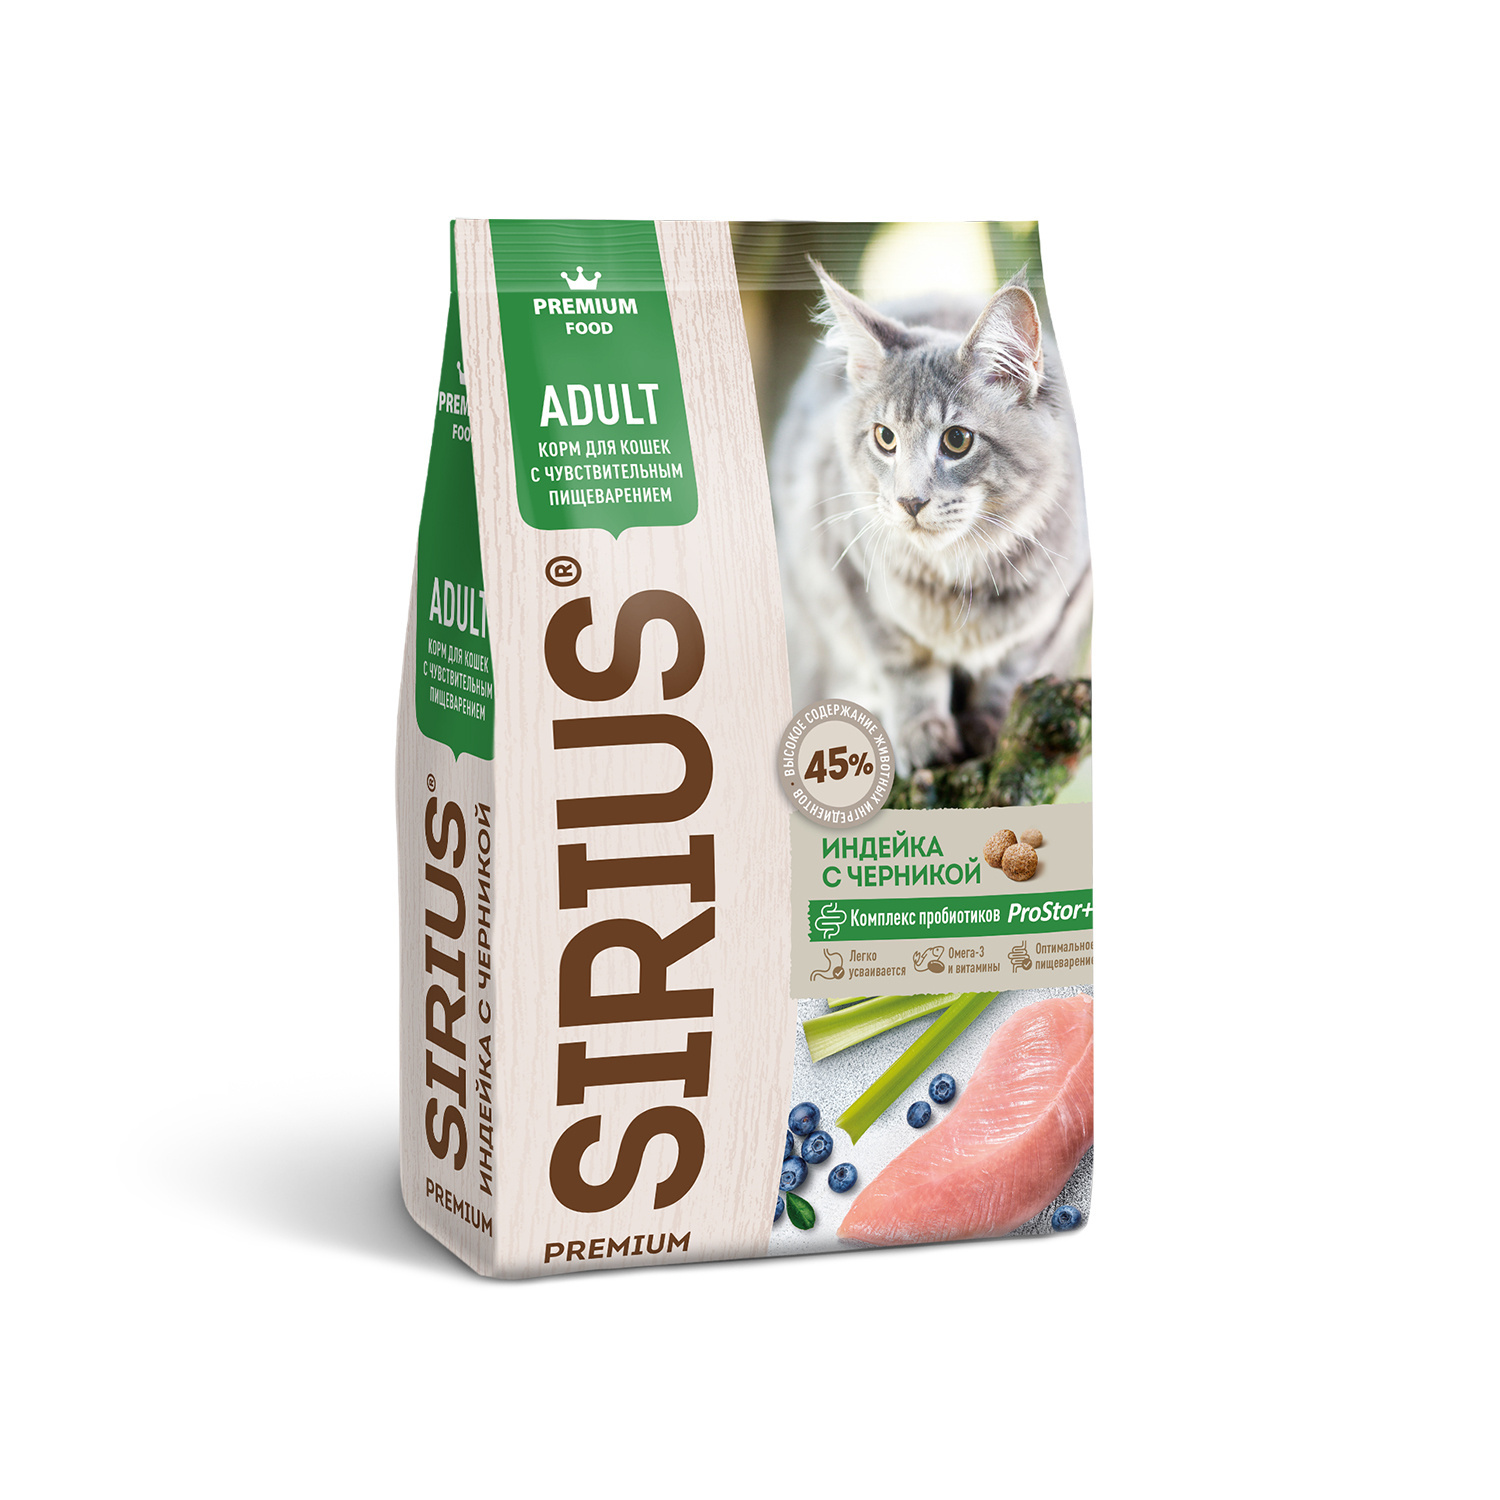 Sirius сухой корм для кошек с чувствительным пищеварением, индейка с черникой (400 г) Sirius сухой корм для кошек с чувствительным пищеварением, индейка с черникой (400 г) - фото 1